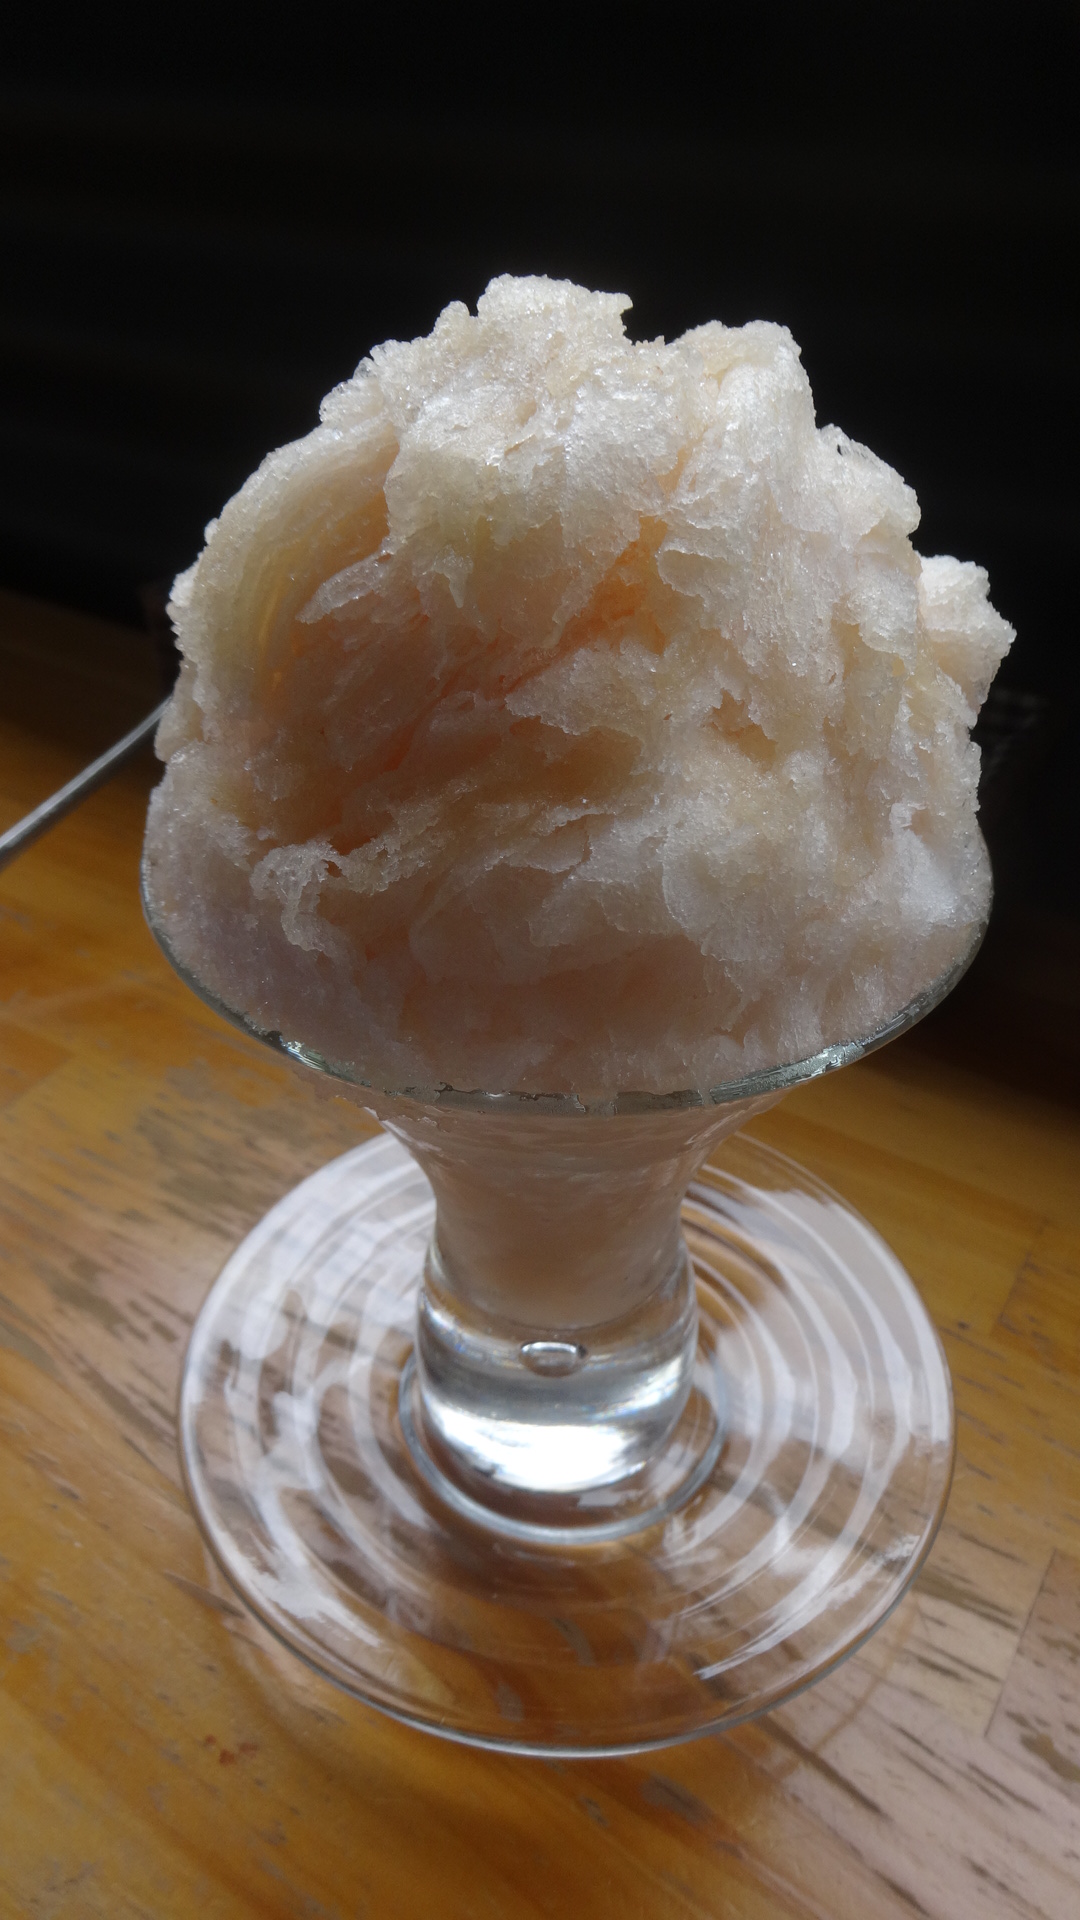 桃のかき氷